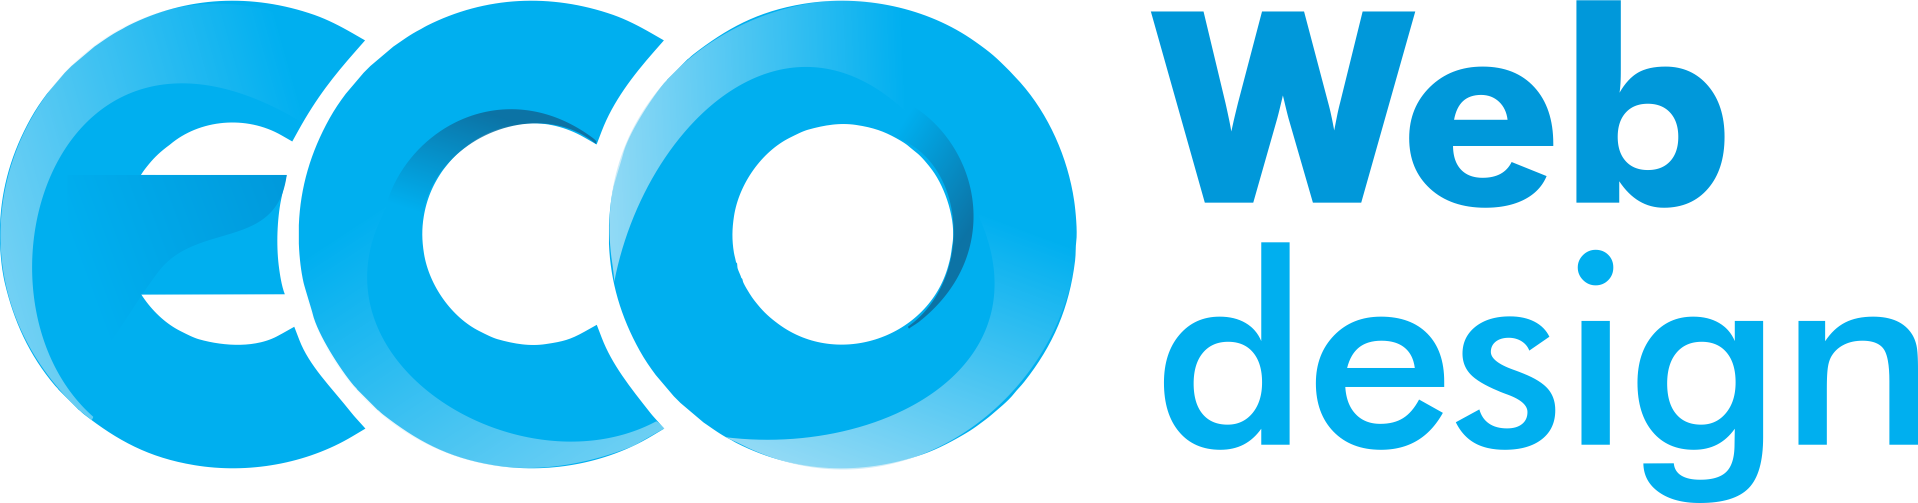 Imagem logo eco